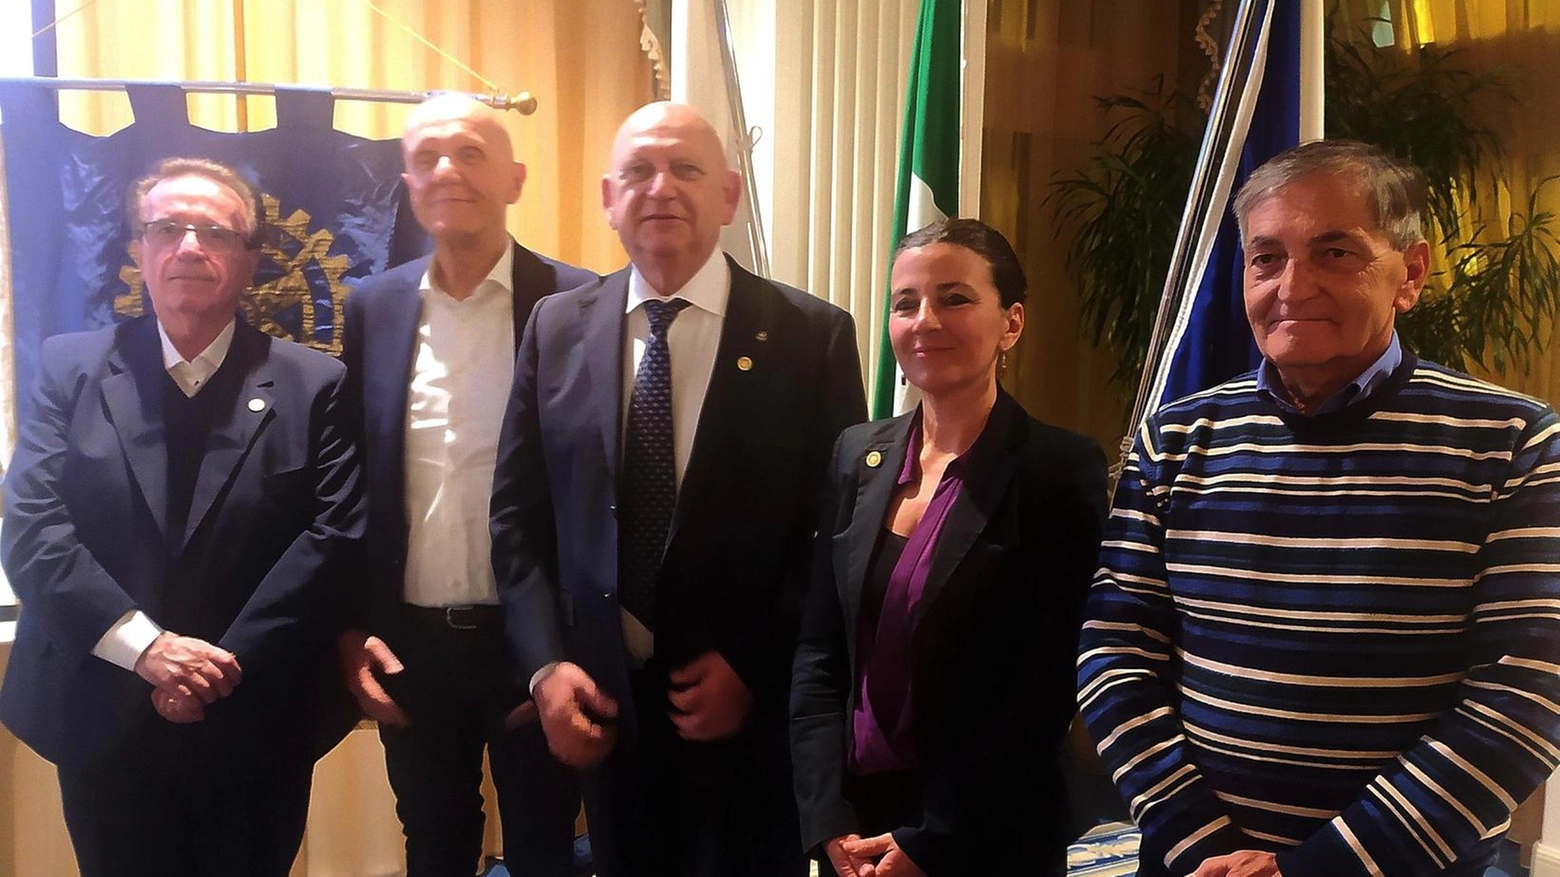 Il Rotary Club Cesena ha premiato quattro personalità locali al Grand Hotel Da Vinci di Cesenatico con il Paul Harris Fellow per il loro impegno nella solidarietà, cultura e imprenditoria.